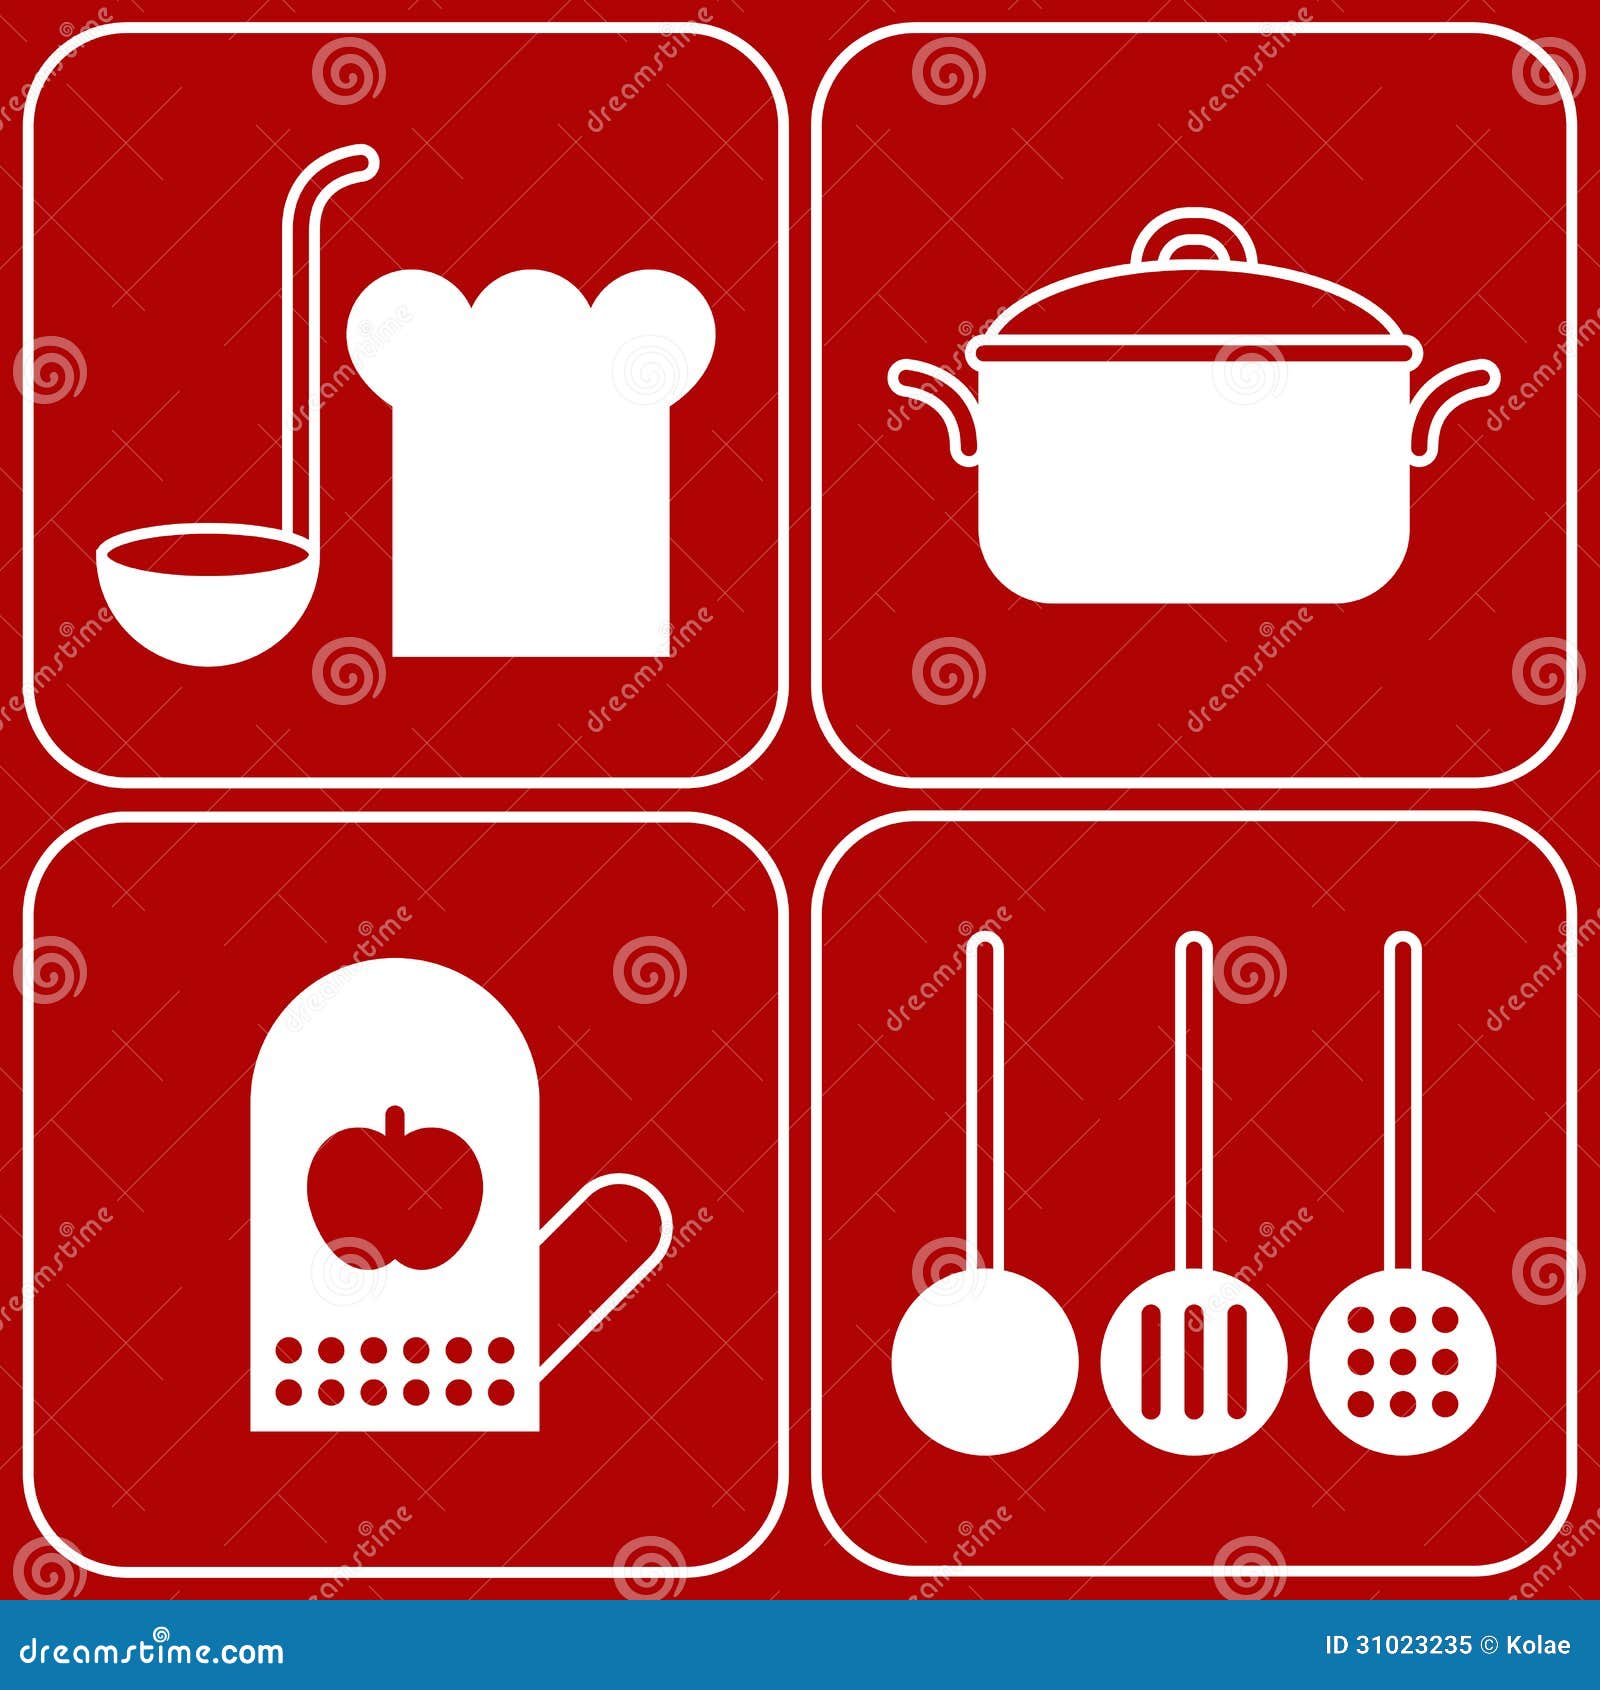 Kitchen Symbols Royalty Free Stock Photo - Image: 31023235